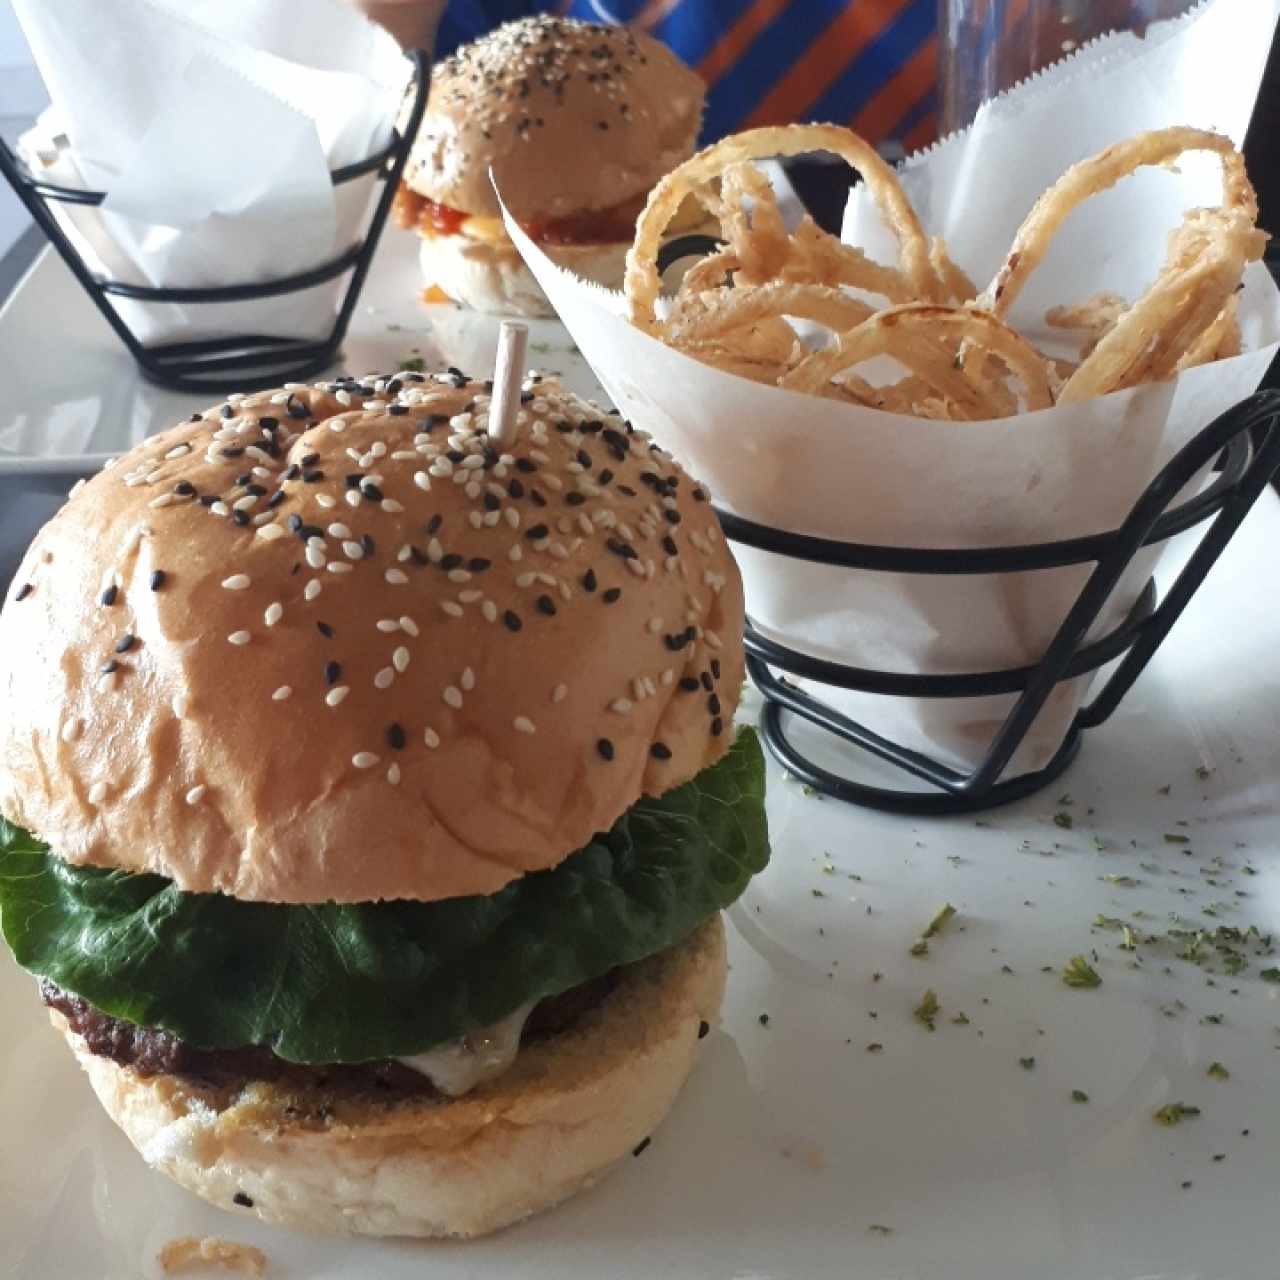 Araxi burger